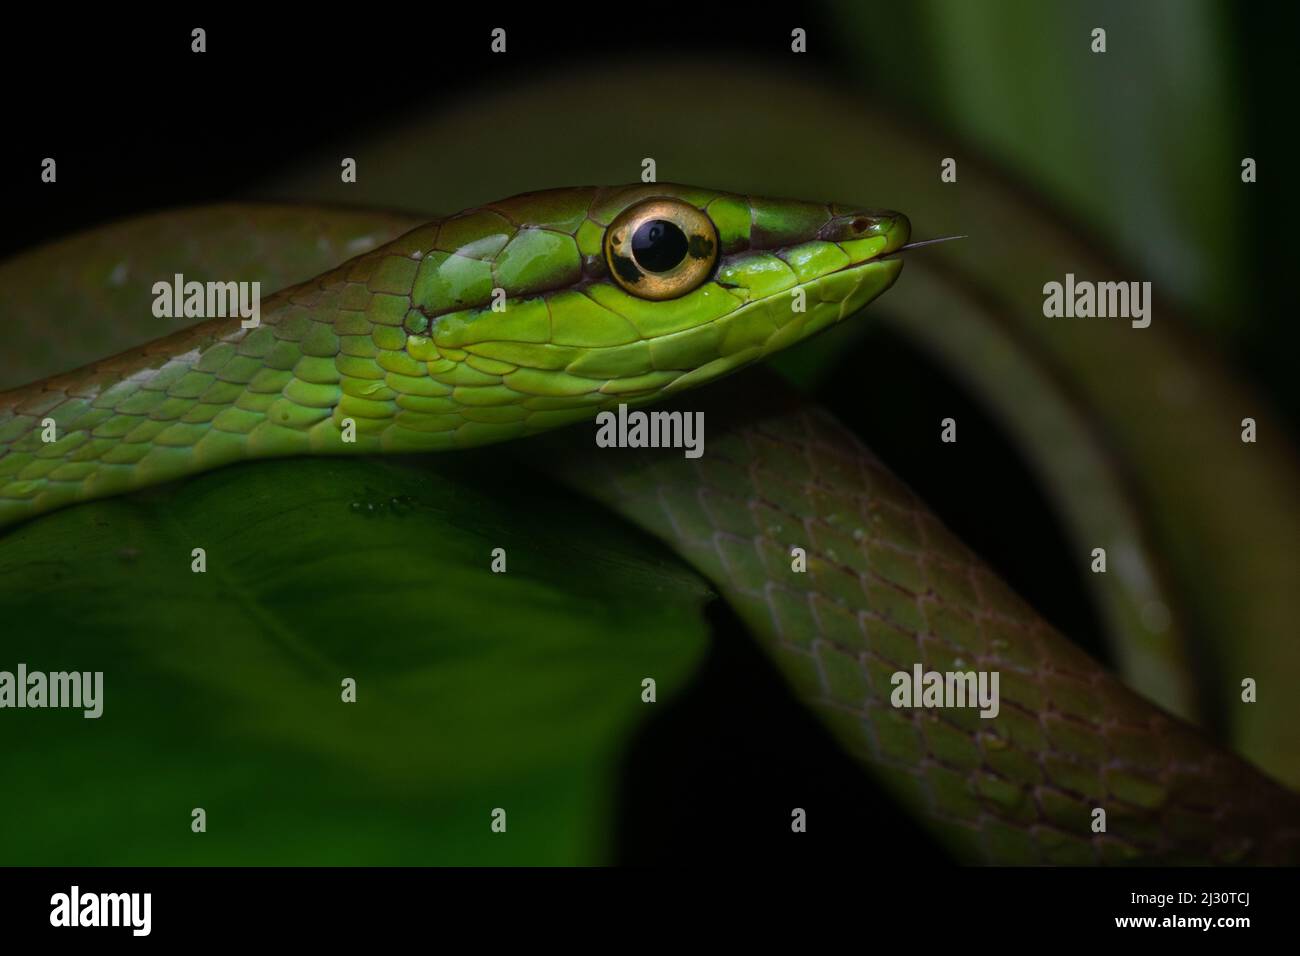 Oxybelis brevirostris, serpent de vigne de Cope, de la forêt équatoriale équatorienne dans la province d'El Oro, Équateur, Amérique du Sud. Banque D'Images